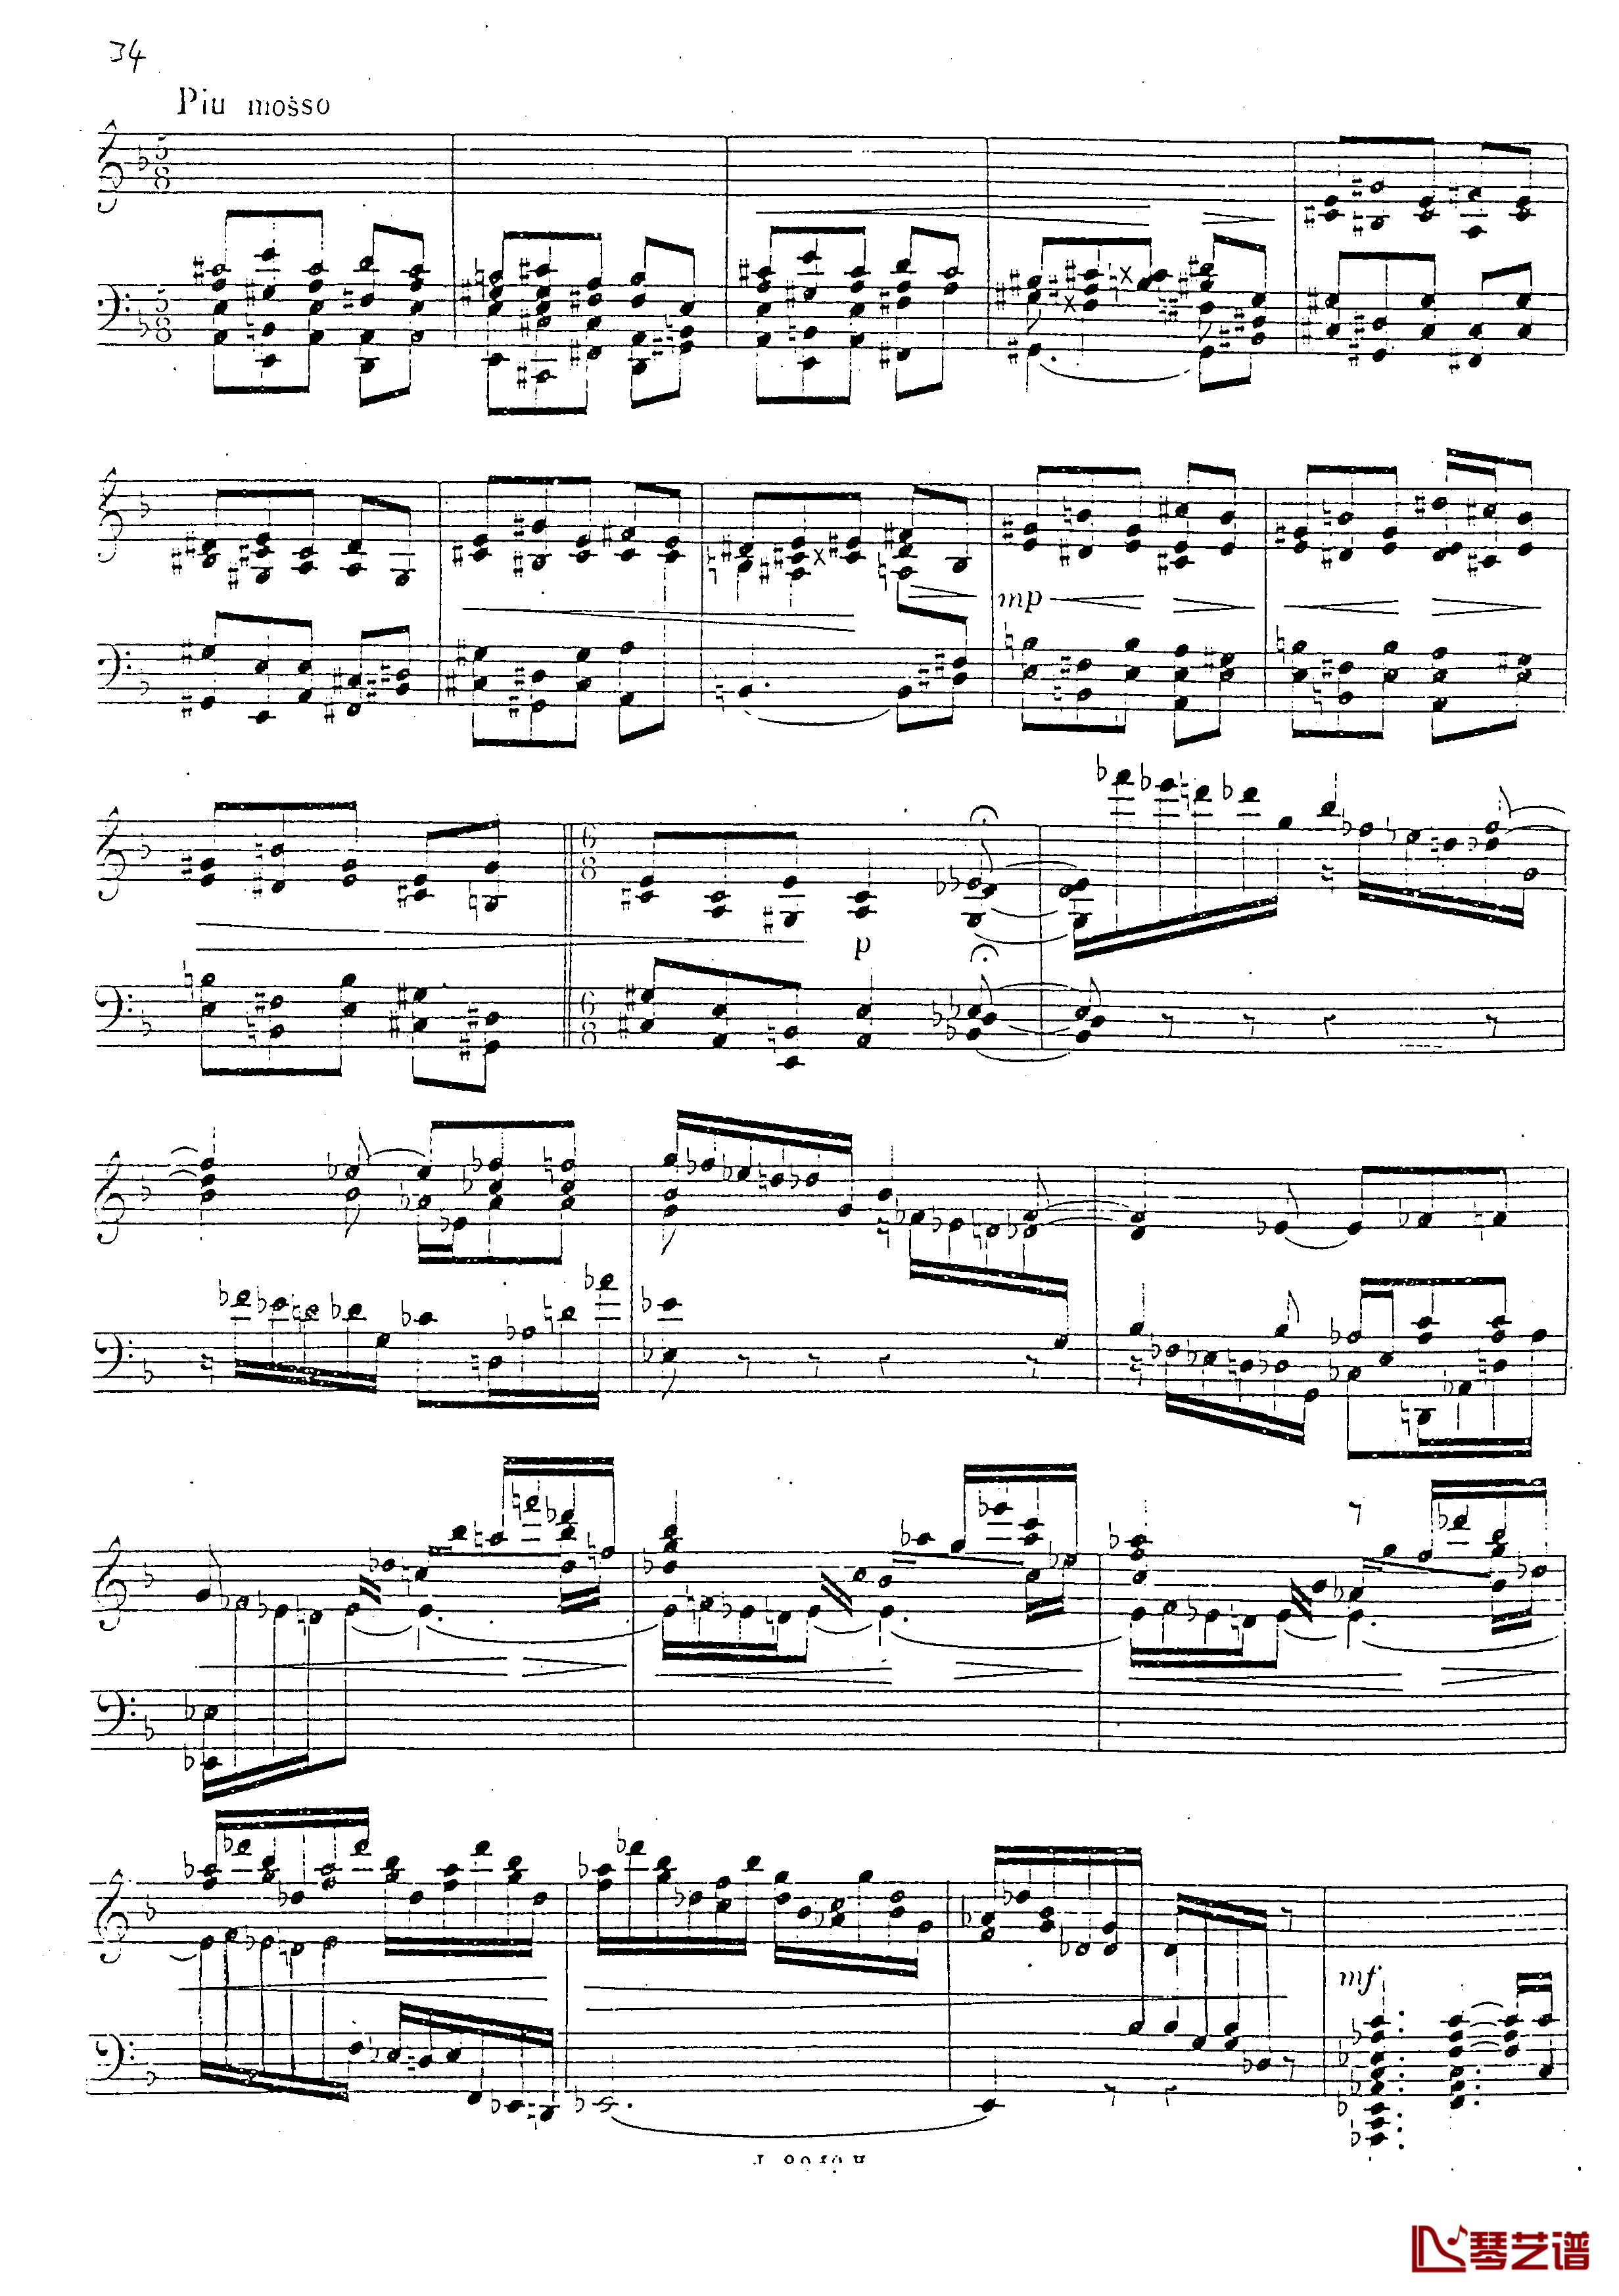 a小调第四钢琴奏鸣曲钢琴谱-安东 鲁宾斯坦- Op.10035